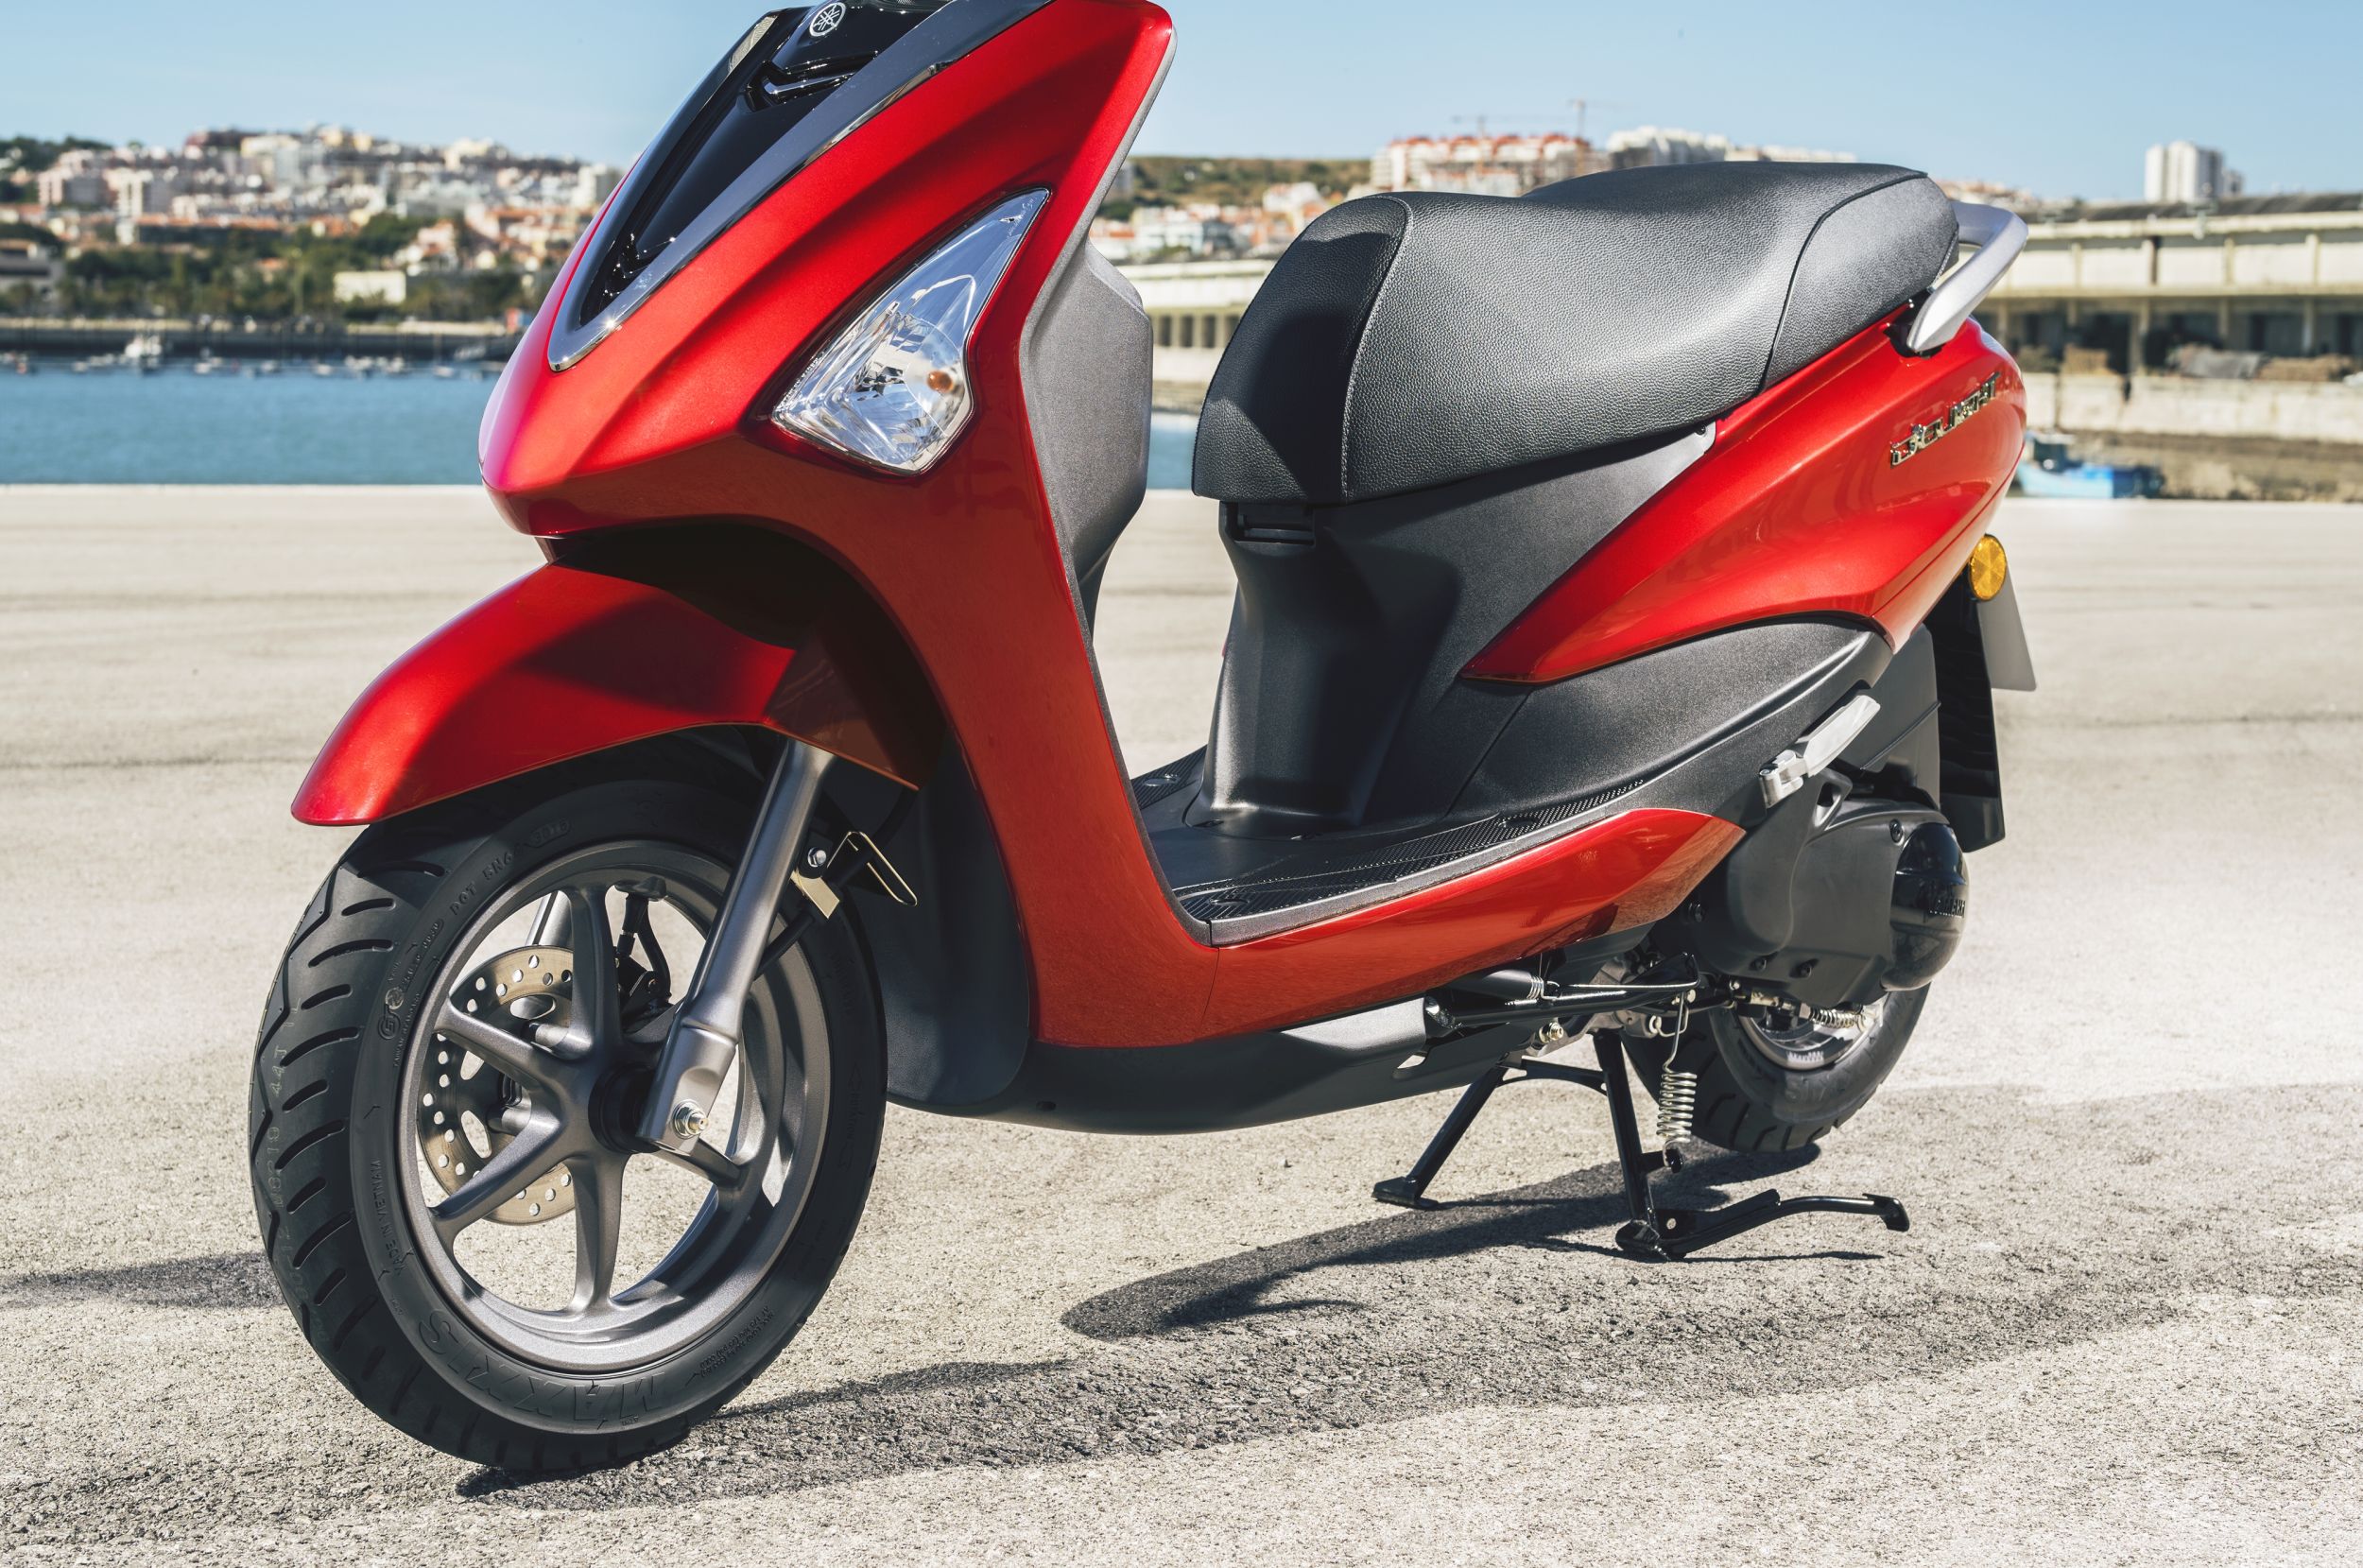 Стильный скутер Yamaha D’elight за 2500 долларов